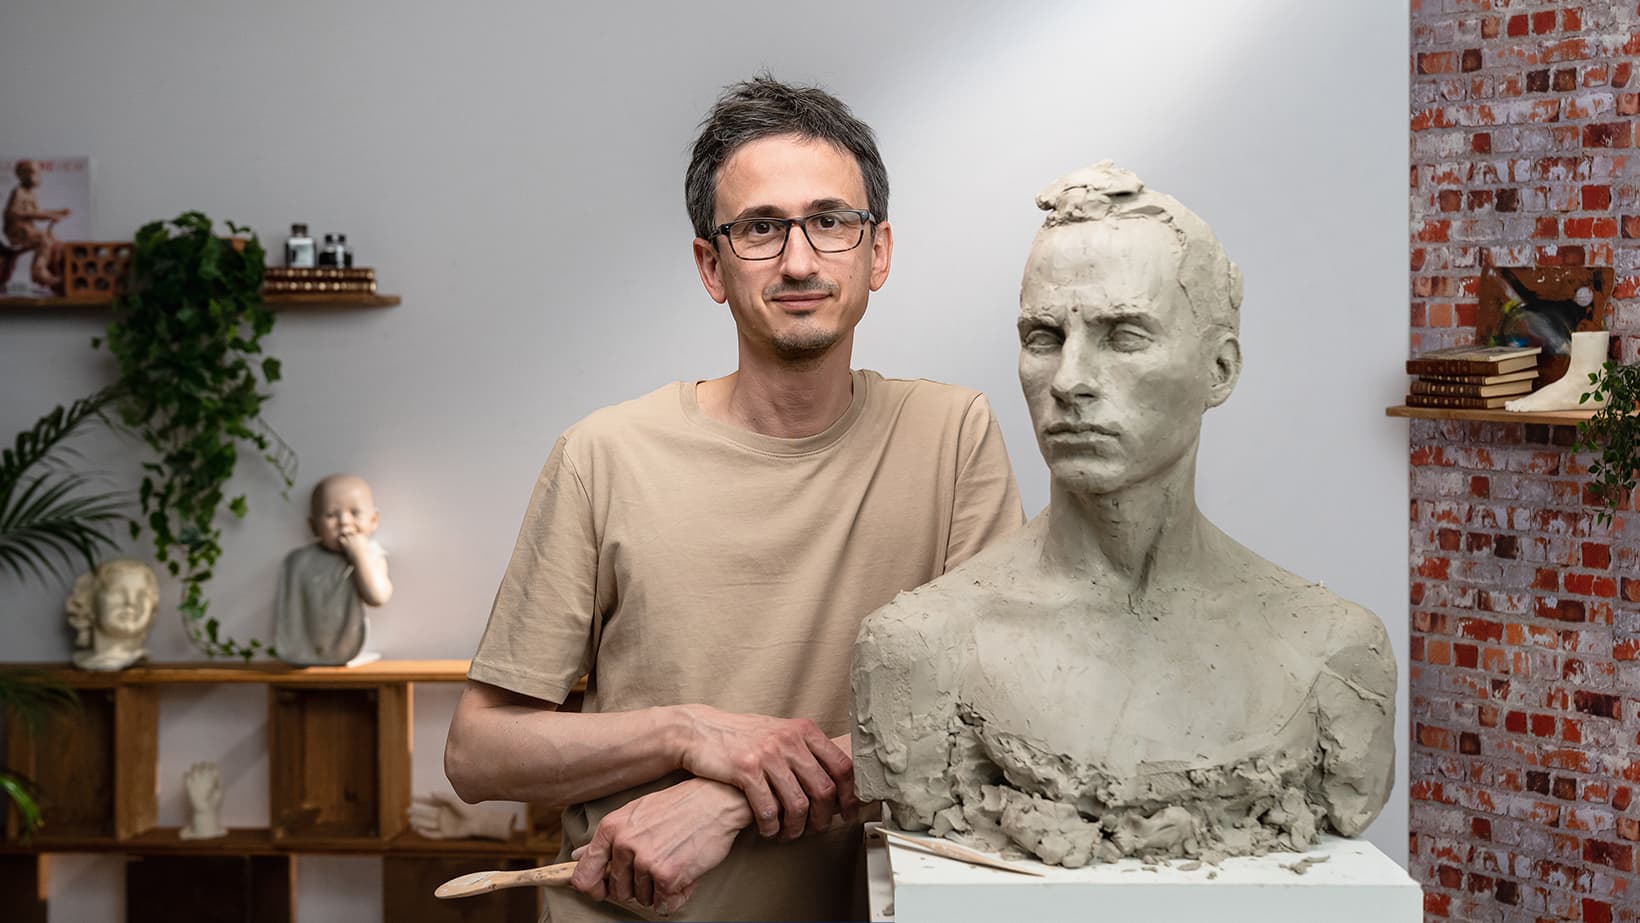 Ritratto con argilla: modella un volto a grandezza naturale